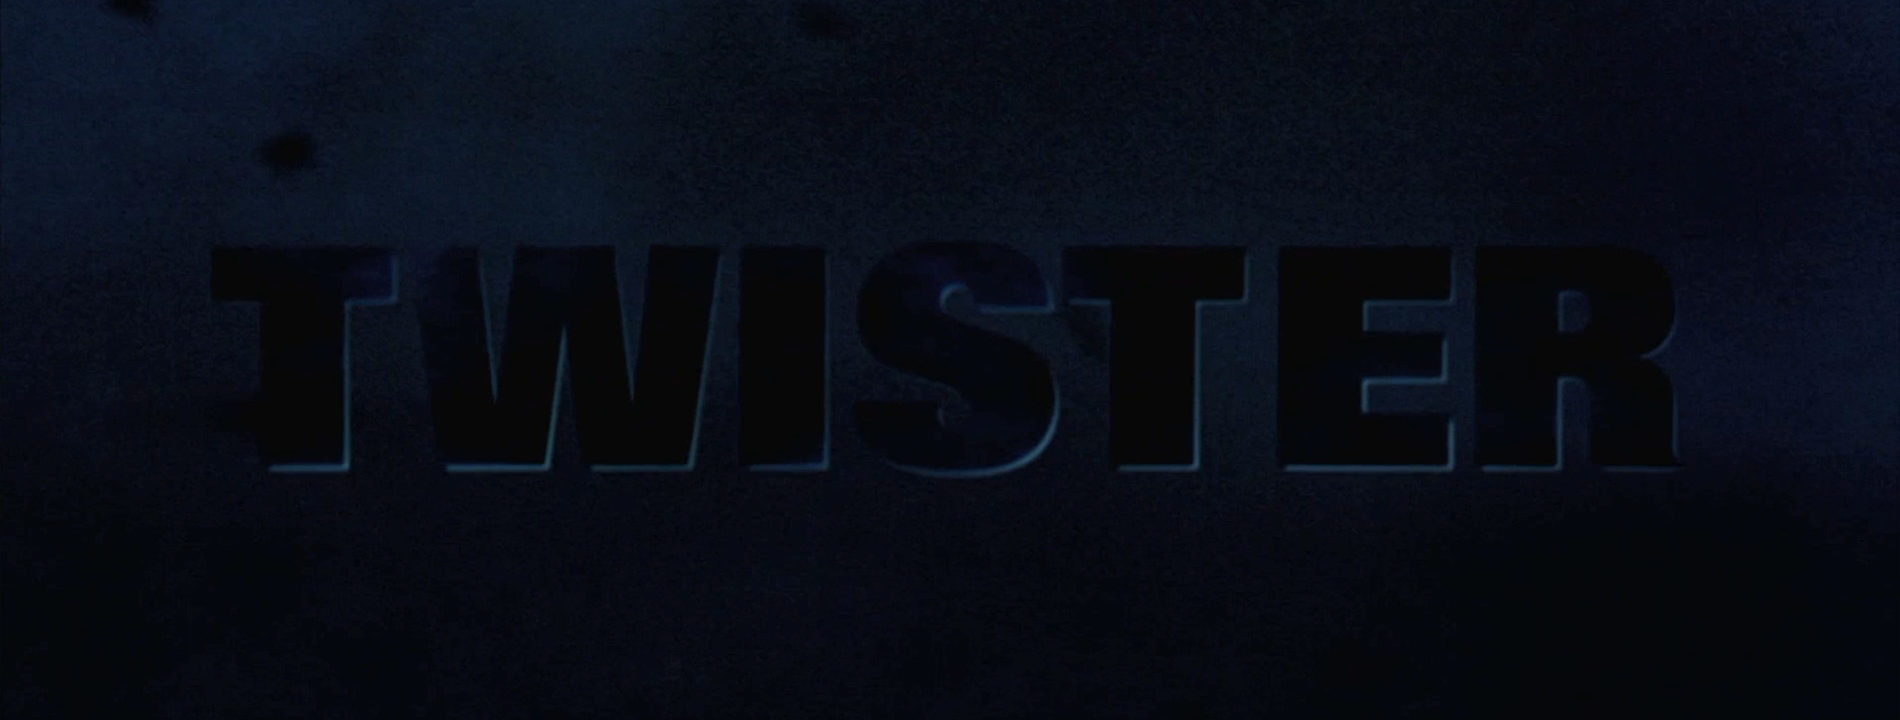 Twister (1996 film) - Wikipedia